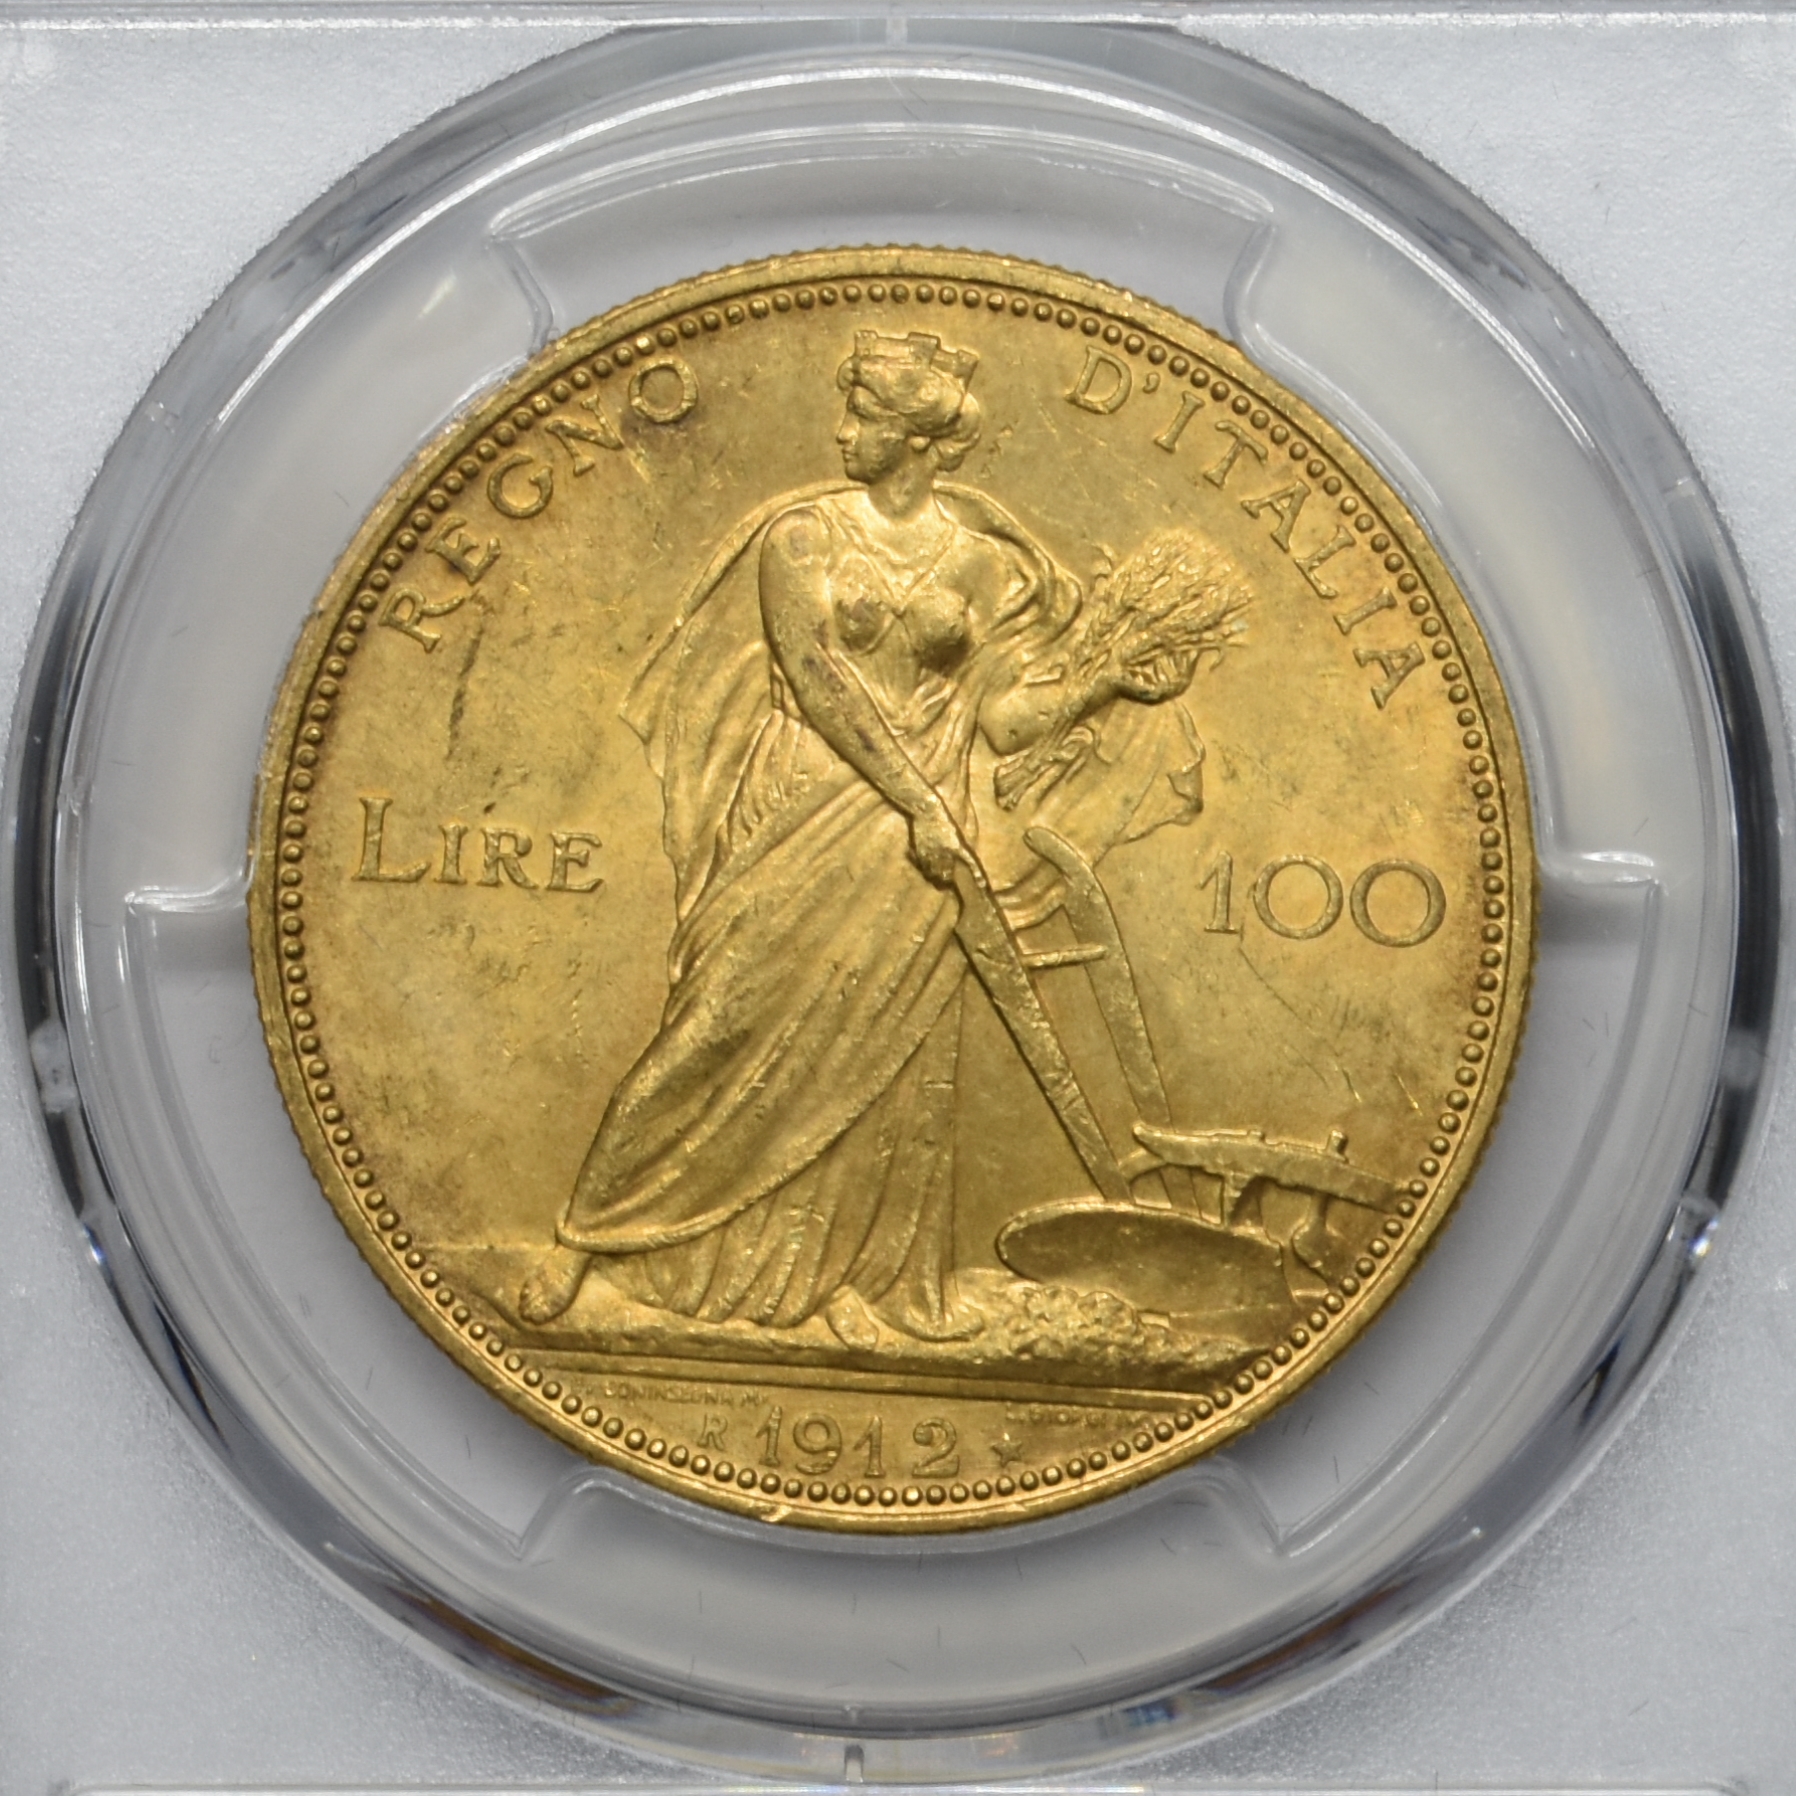 Sold】1912年 豊穣の女神 100リレ金貨 MS63 PCGS | ソブリンパートナーズ